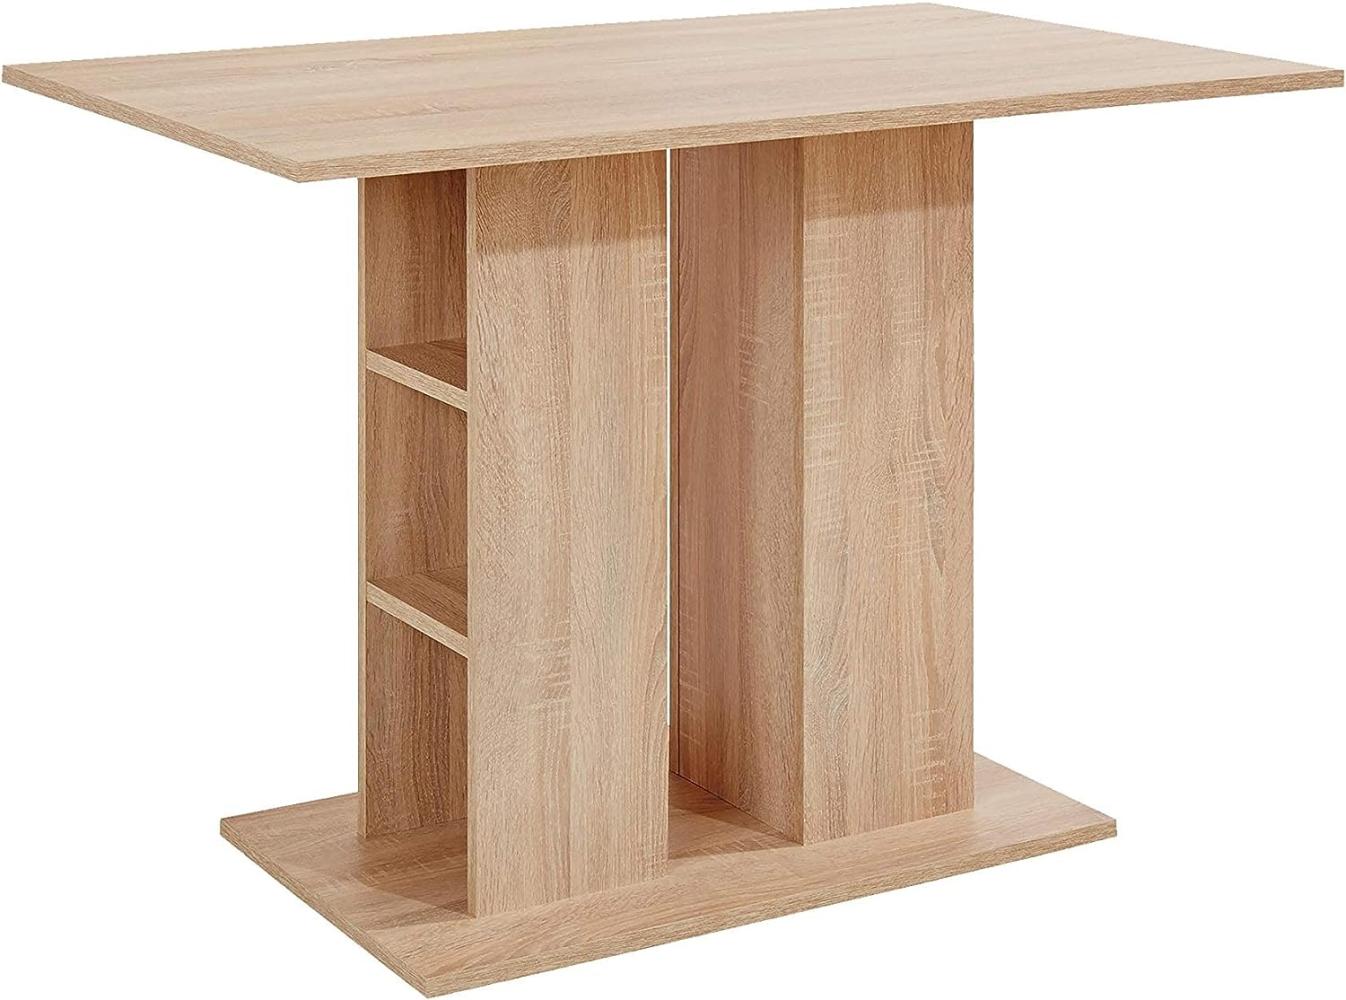 Säulentisch / Moderner Esstisch aus Melamin Sonoma Eiche beige / Küchentisch mit Stauraum / mit Ablage / 110 x 70 x 75 cm (L x B x H) / Küchentisch Bild 1